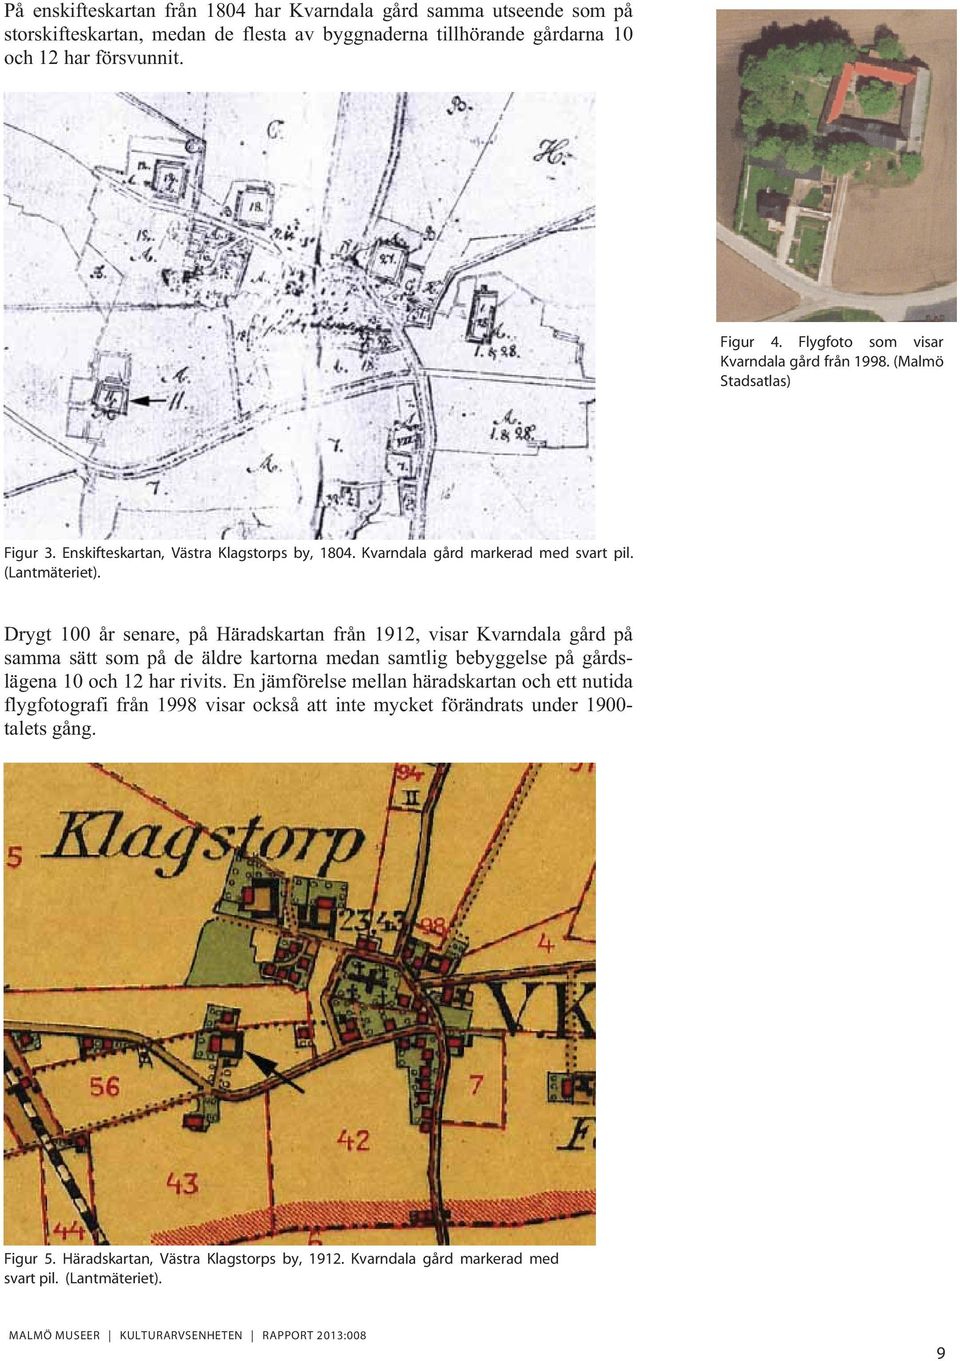 Drygt 100 år senare, på Häradskartan från 1912, visar Kvarndala gård på samma sätt som på de äldre kartorna medan samtlig bebyggelse på gårdslägena 10 och 12 har rivits.